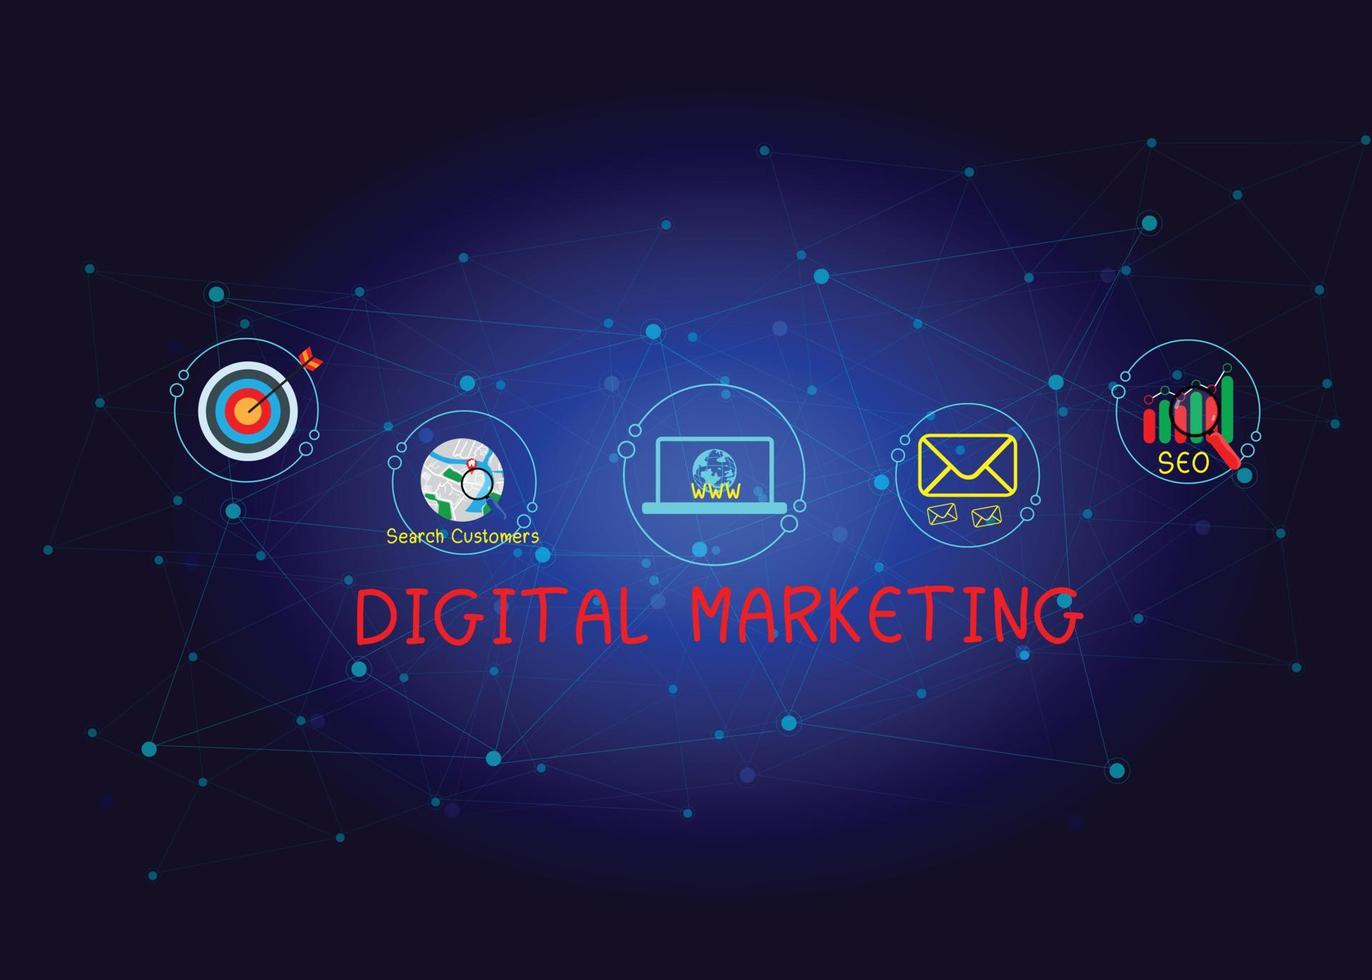 los materiales de marketing digital de concepto anuncian su sitio web, correo electrónico, red social, seo, video, aplicación móvil con íconos y analizan el roi y la estrategia. vector